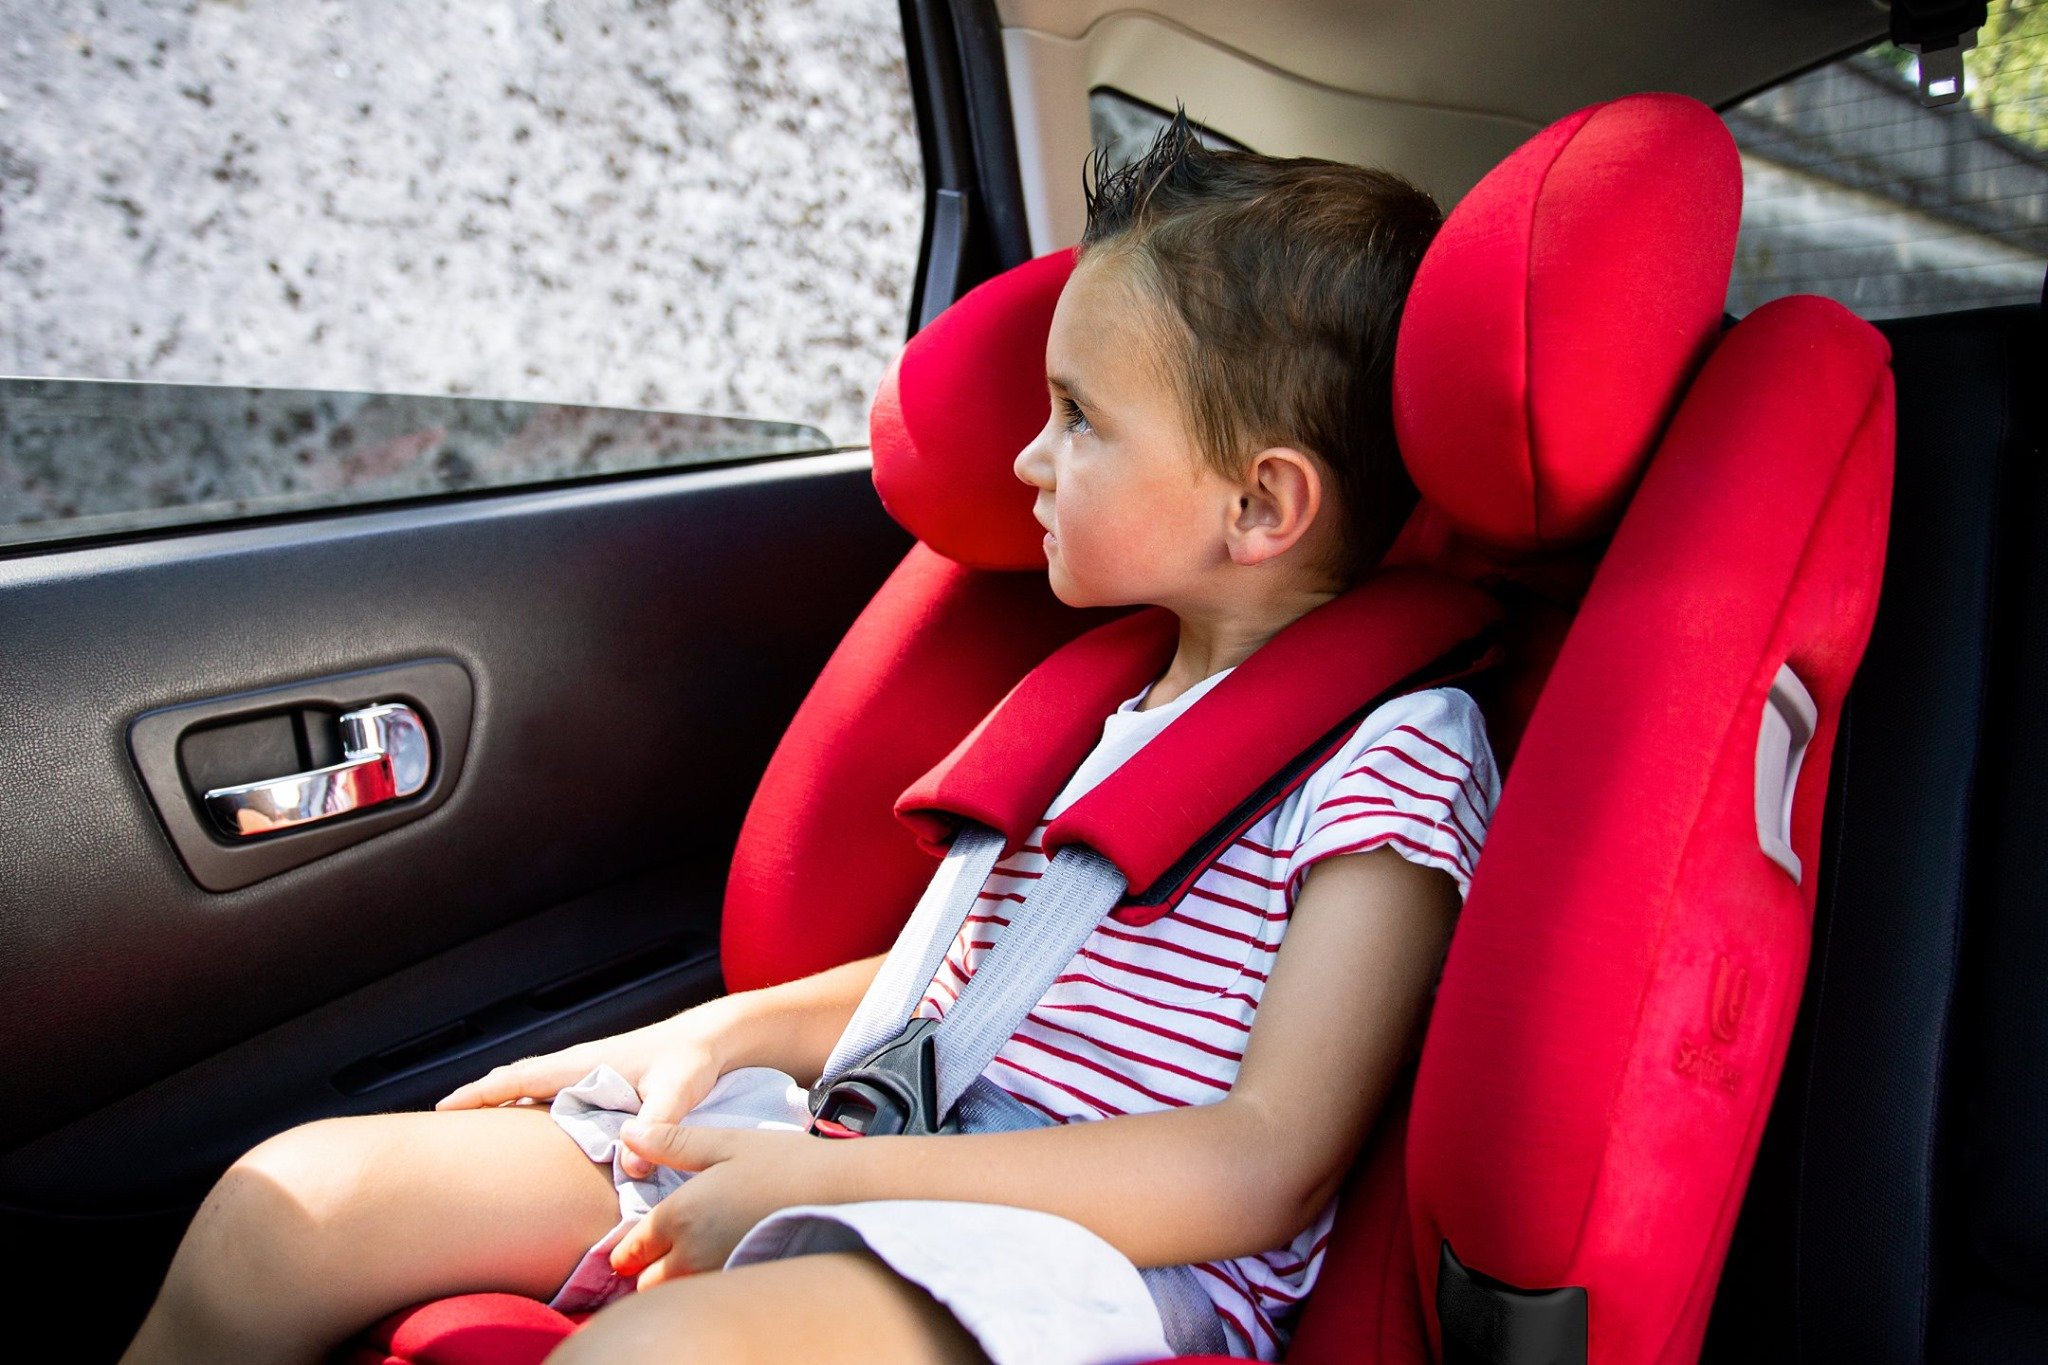 dziewczynka siedzi w czerwonym foteliku samochodowymfirmy Renolux